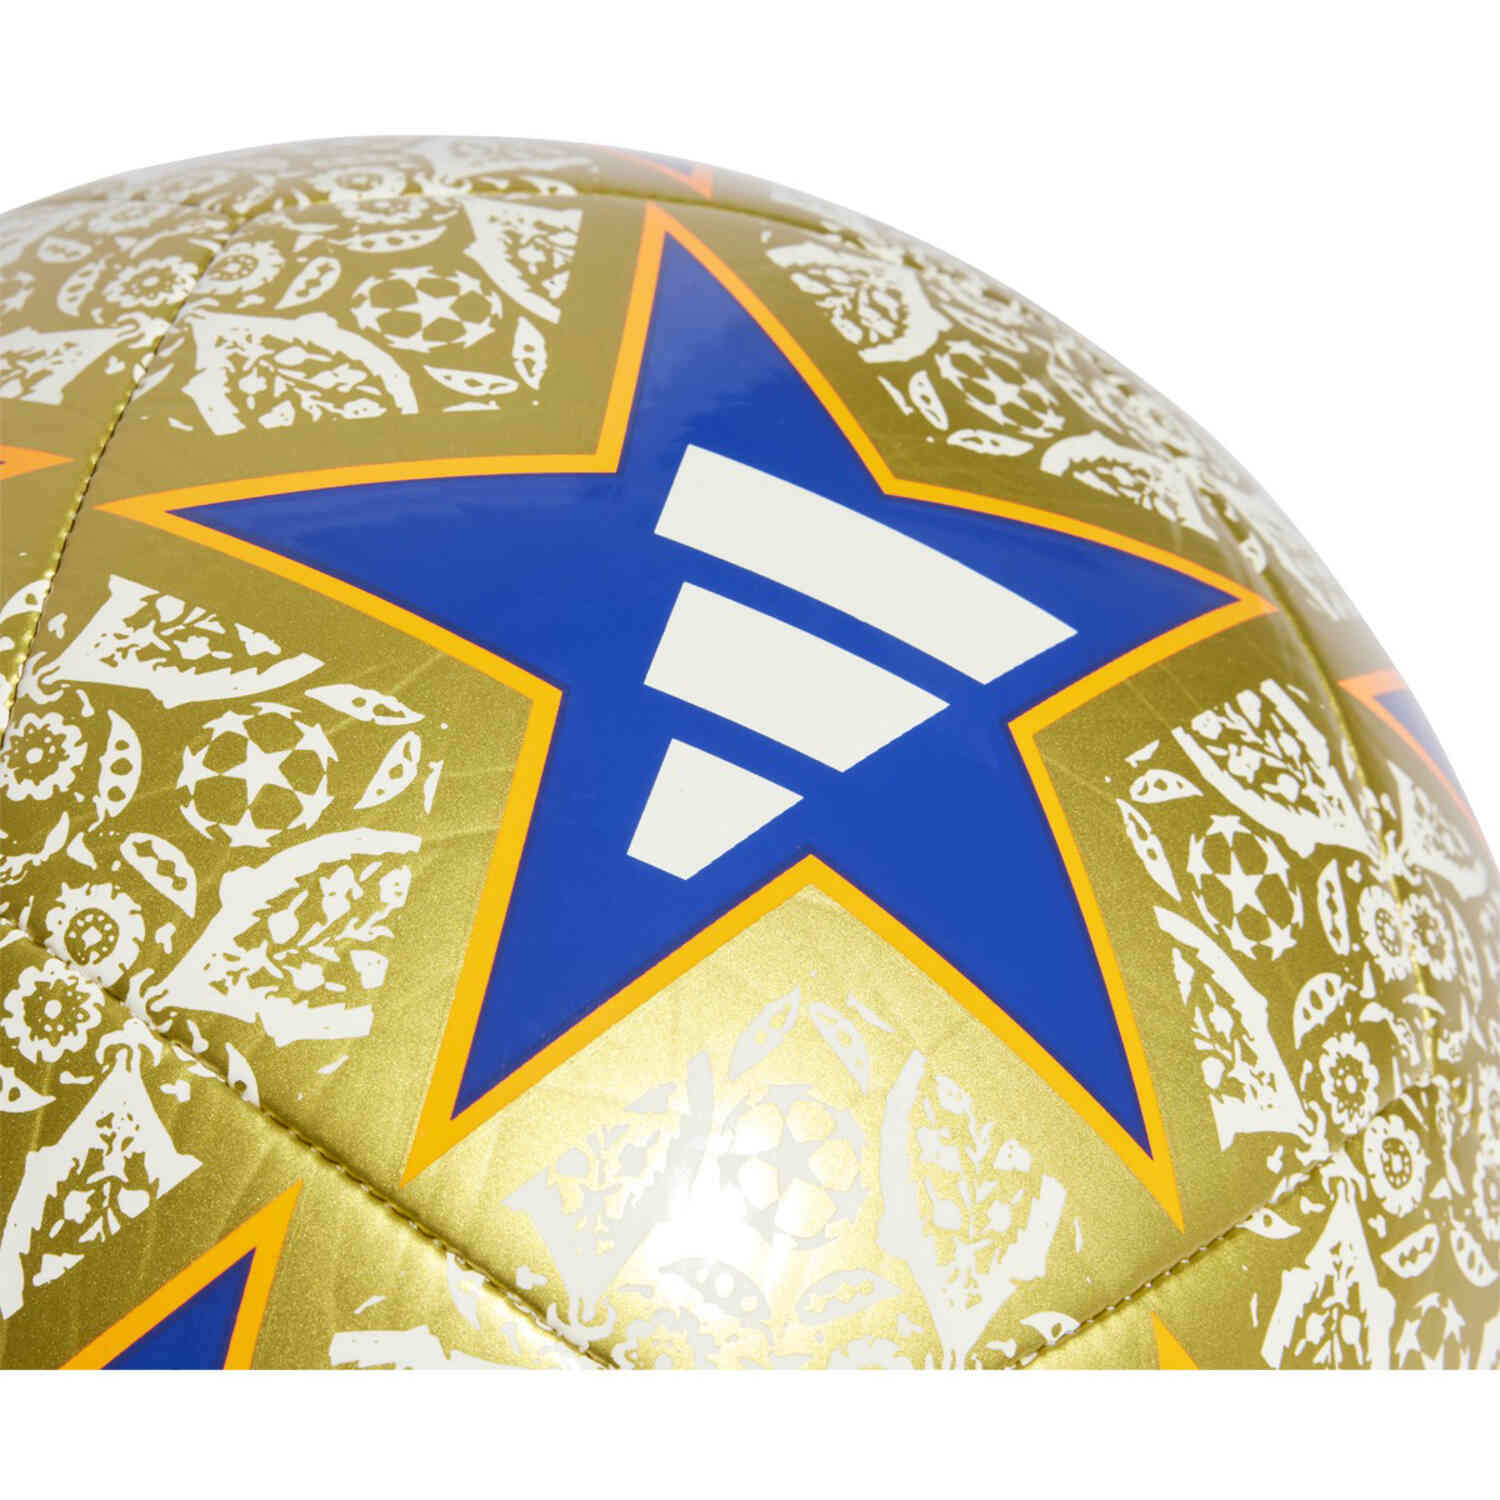 adidas Istanbul Finale 23 Club Soccer Ball – 2023